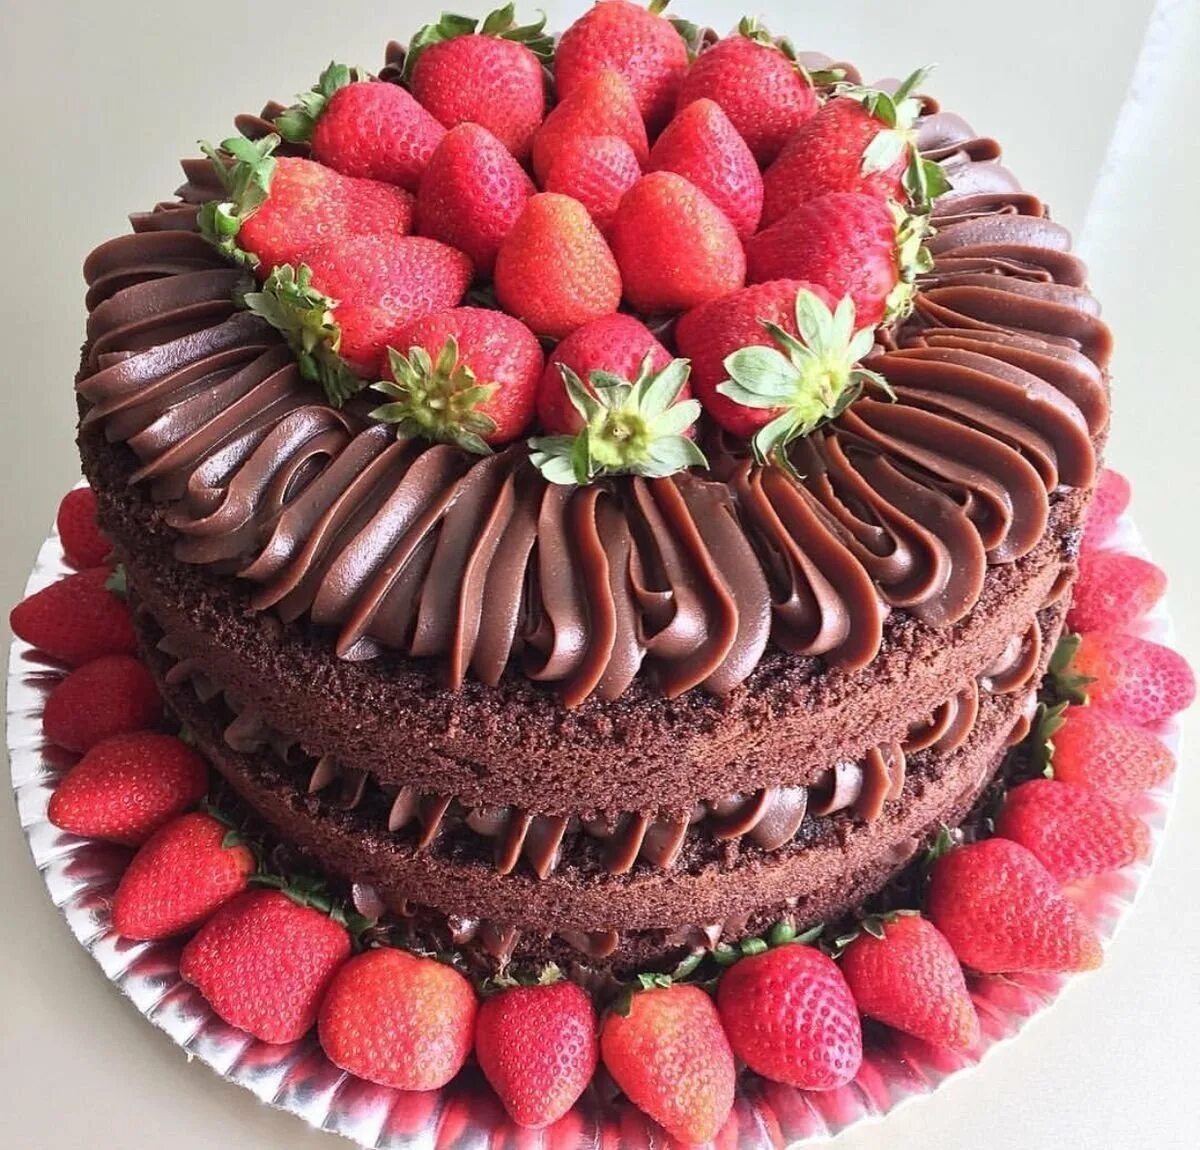 Красивые торты. Украшение торта клубникой и шоколадом. Красивый шоколадный торт. Торт украшенный клубникой и шоколадом. Красиво украшенные торты фото